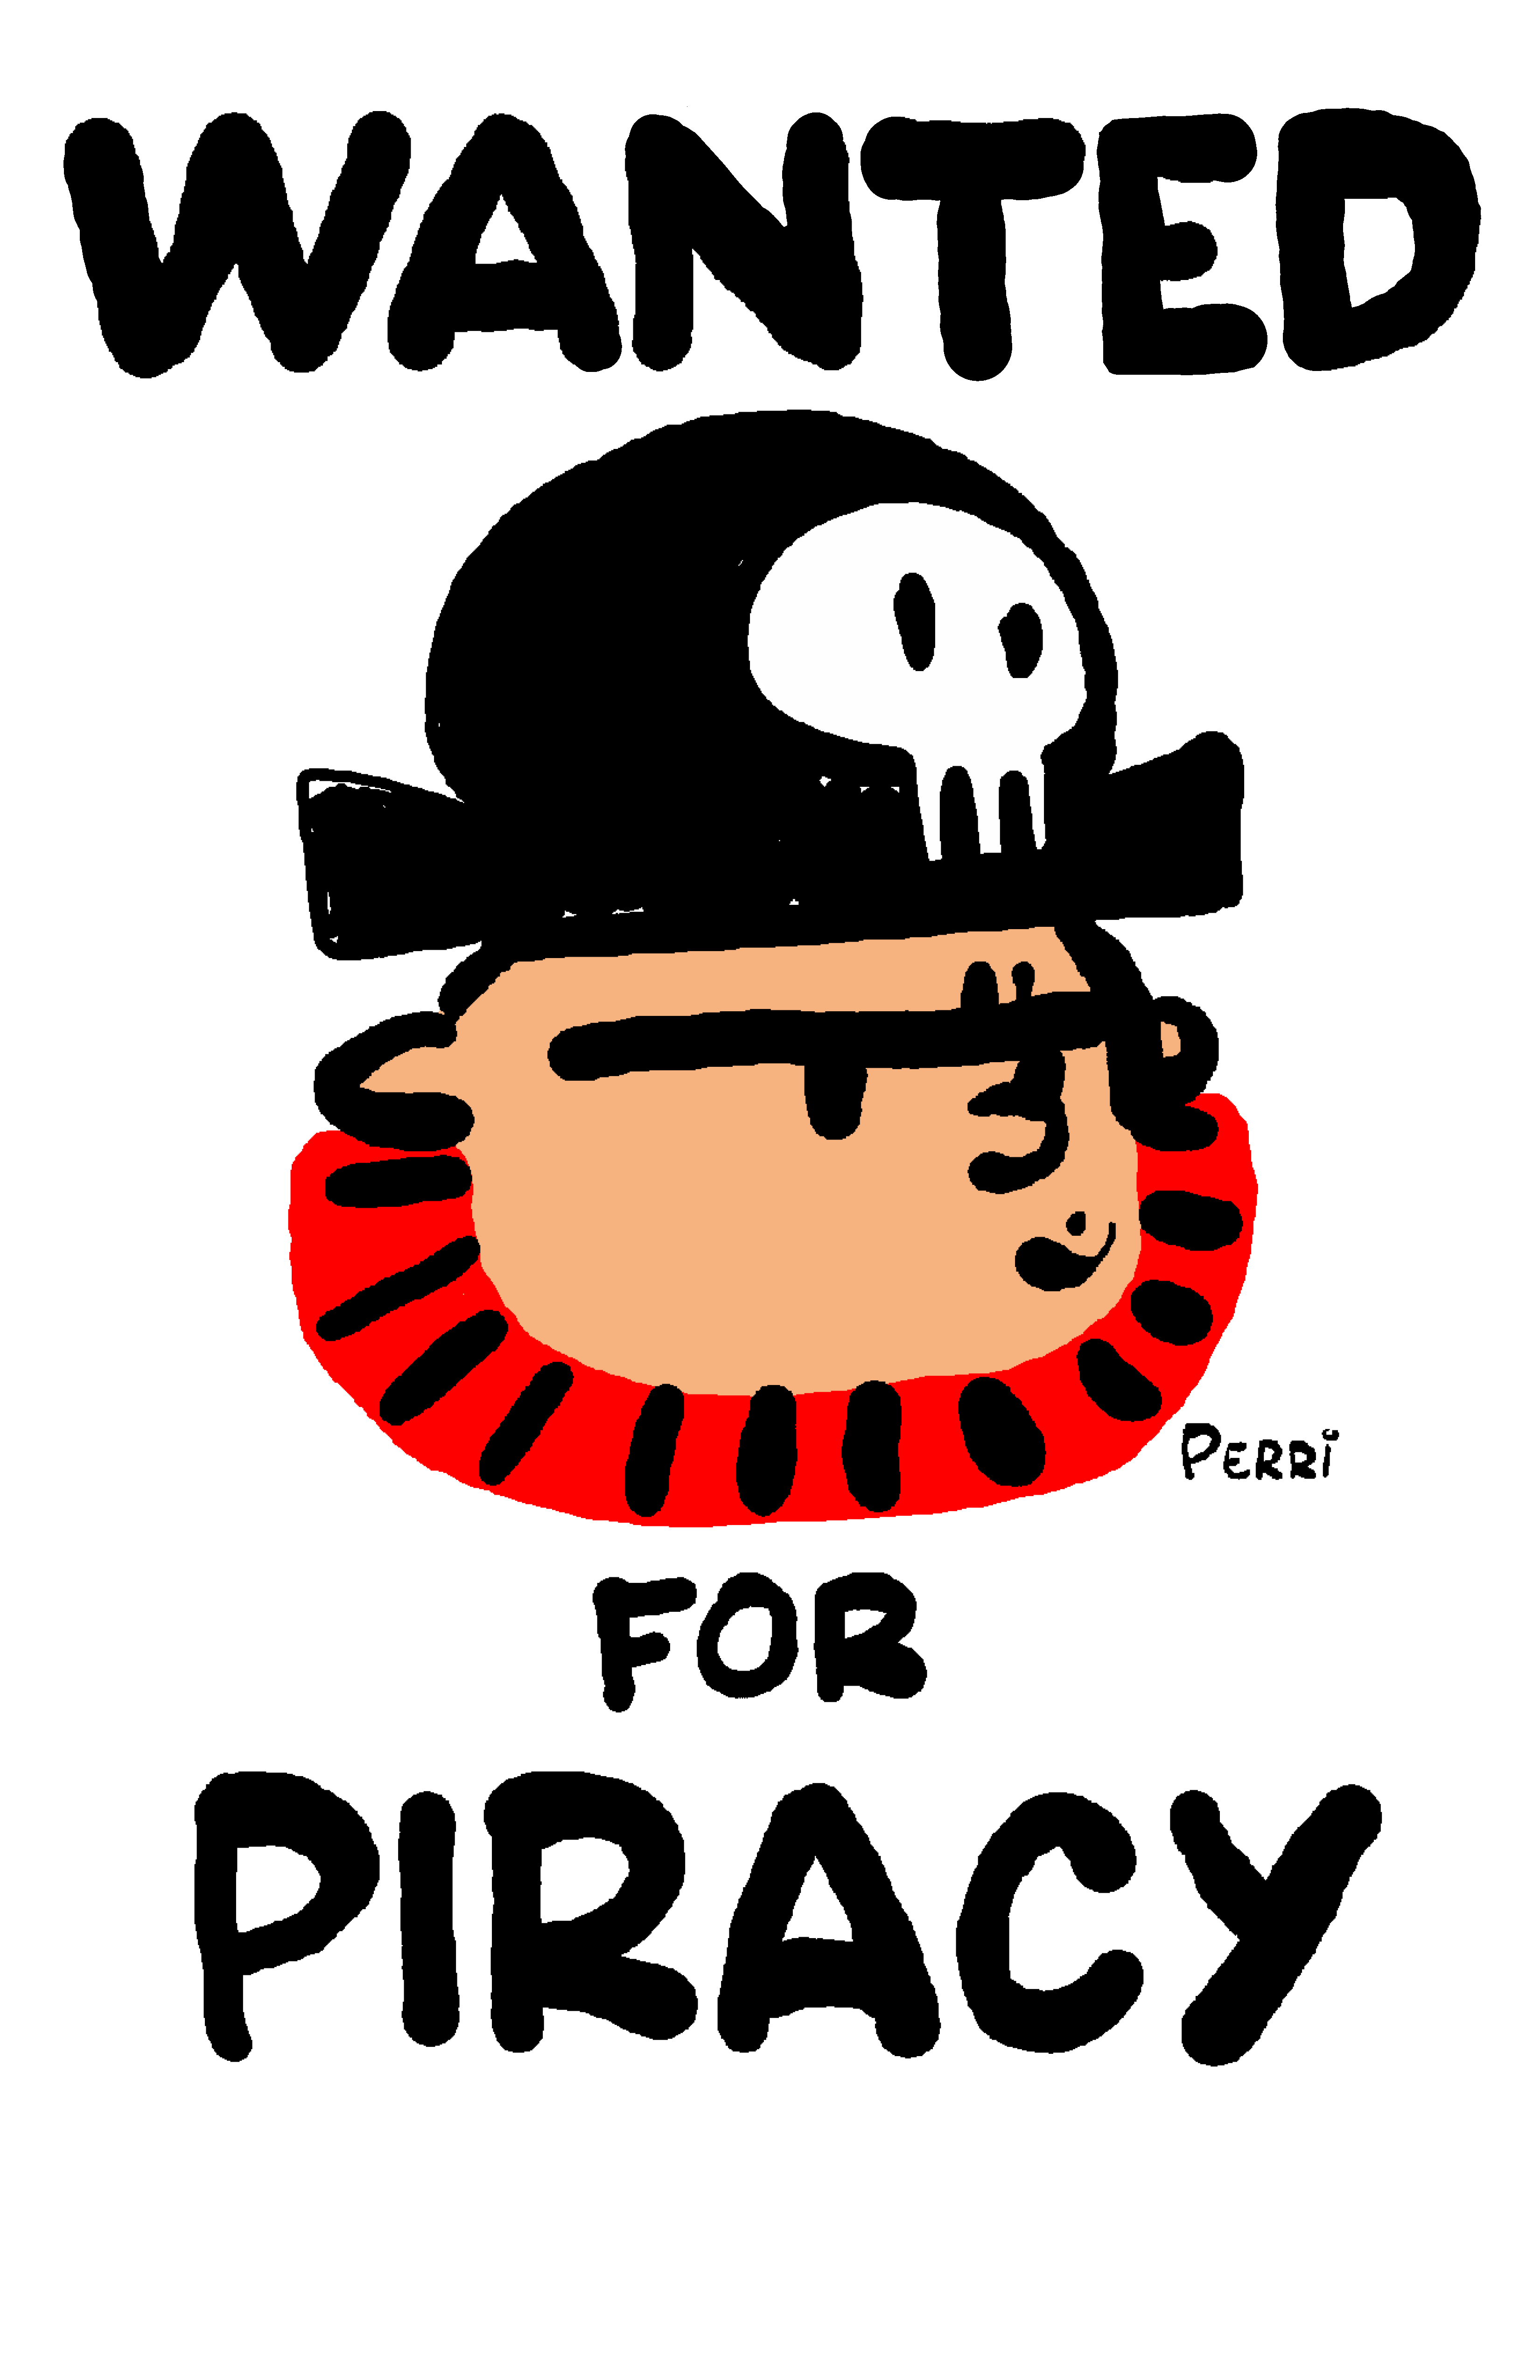 Wanted piracy art